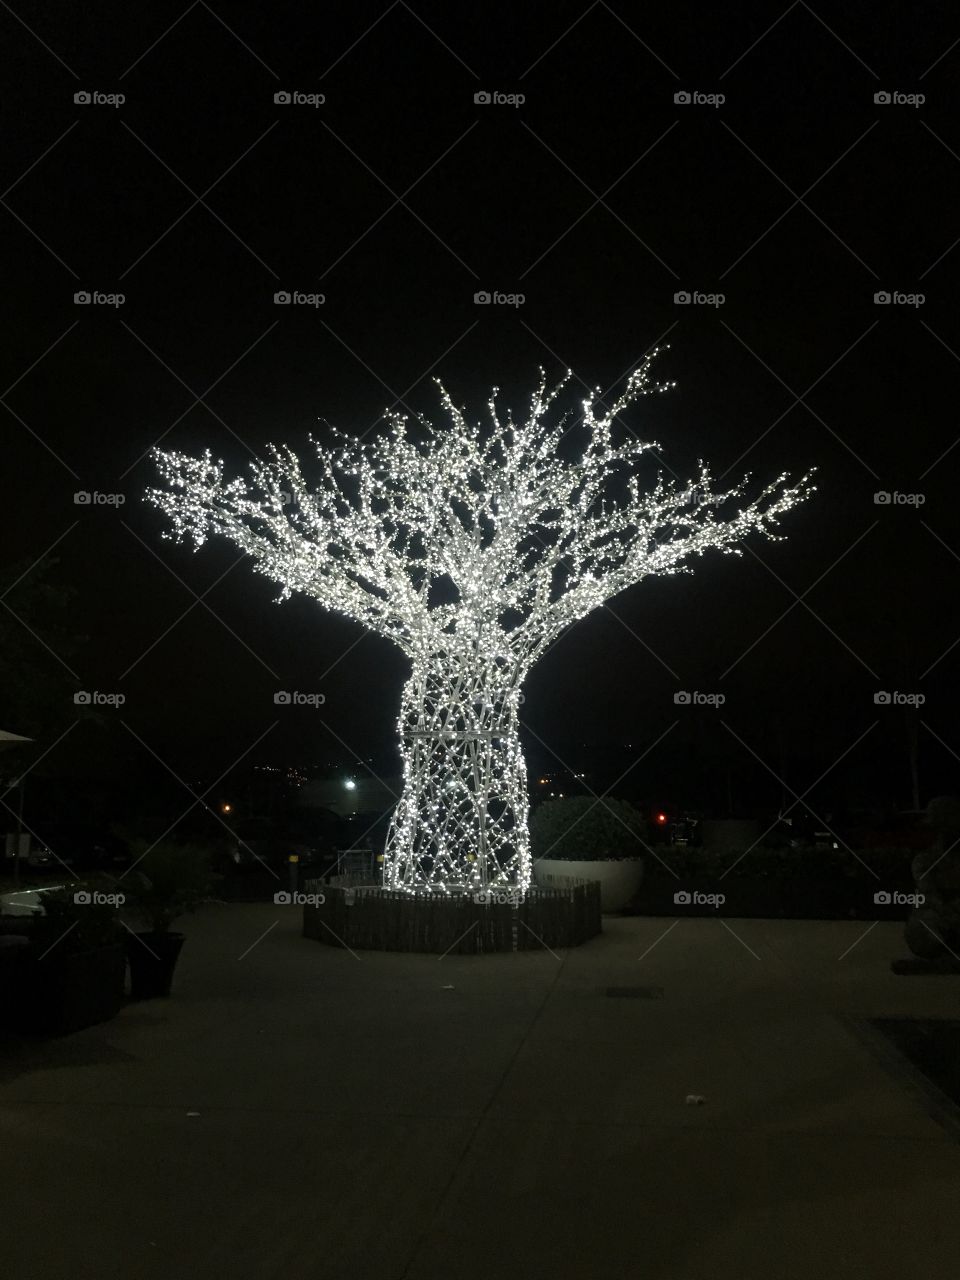 Baobab tree of light